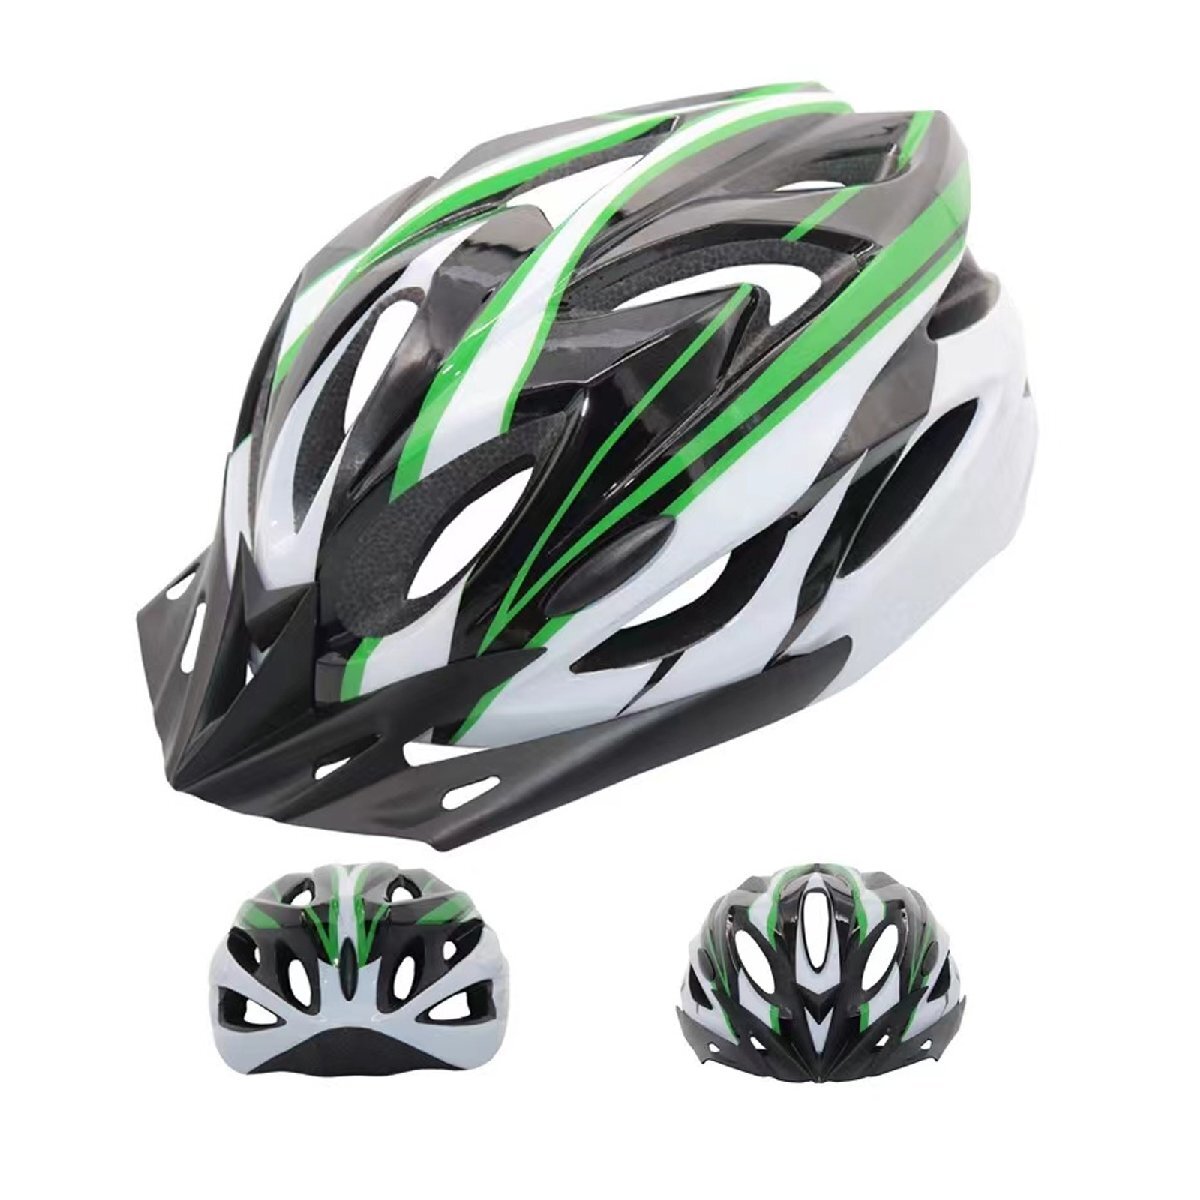 Велосипедный шлем/цикл -шлем/черный и зеленый/размер регулируется/54 см -61 см/тип циферблата/Ультра -легкий вес/безопасность/дышащий/с козырьком